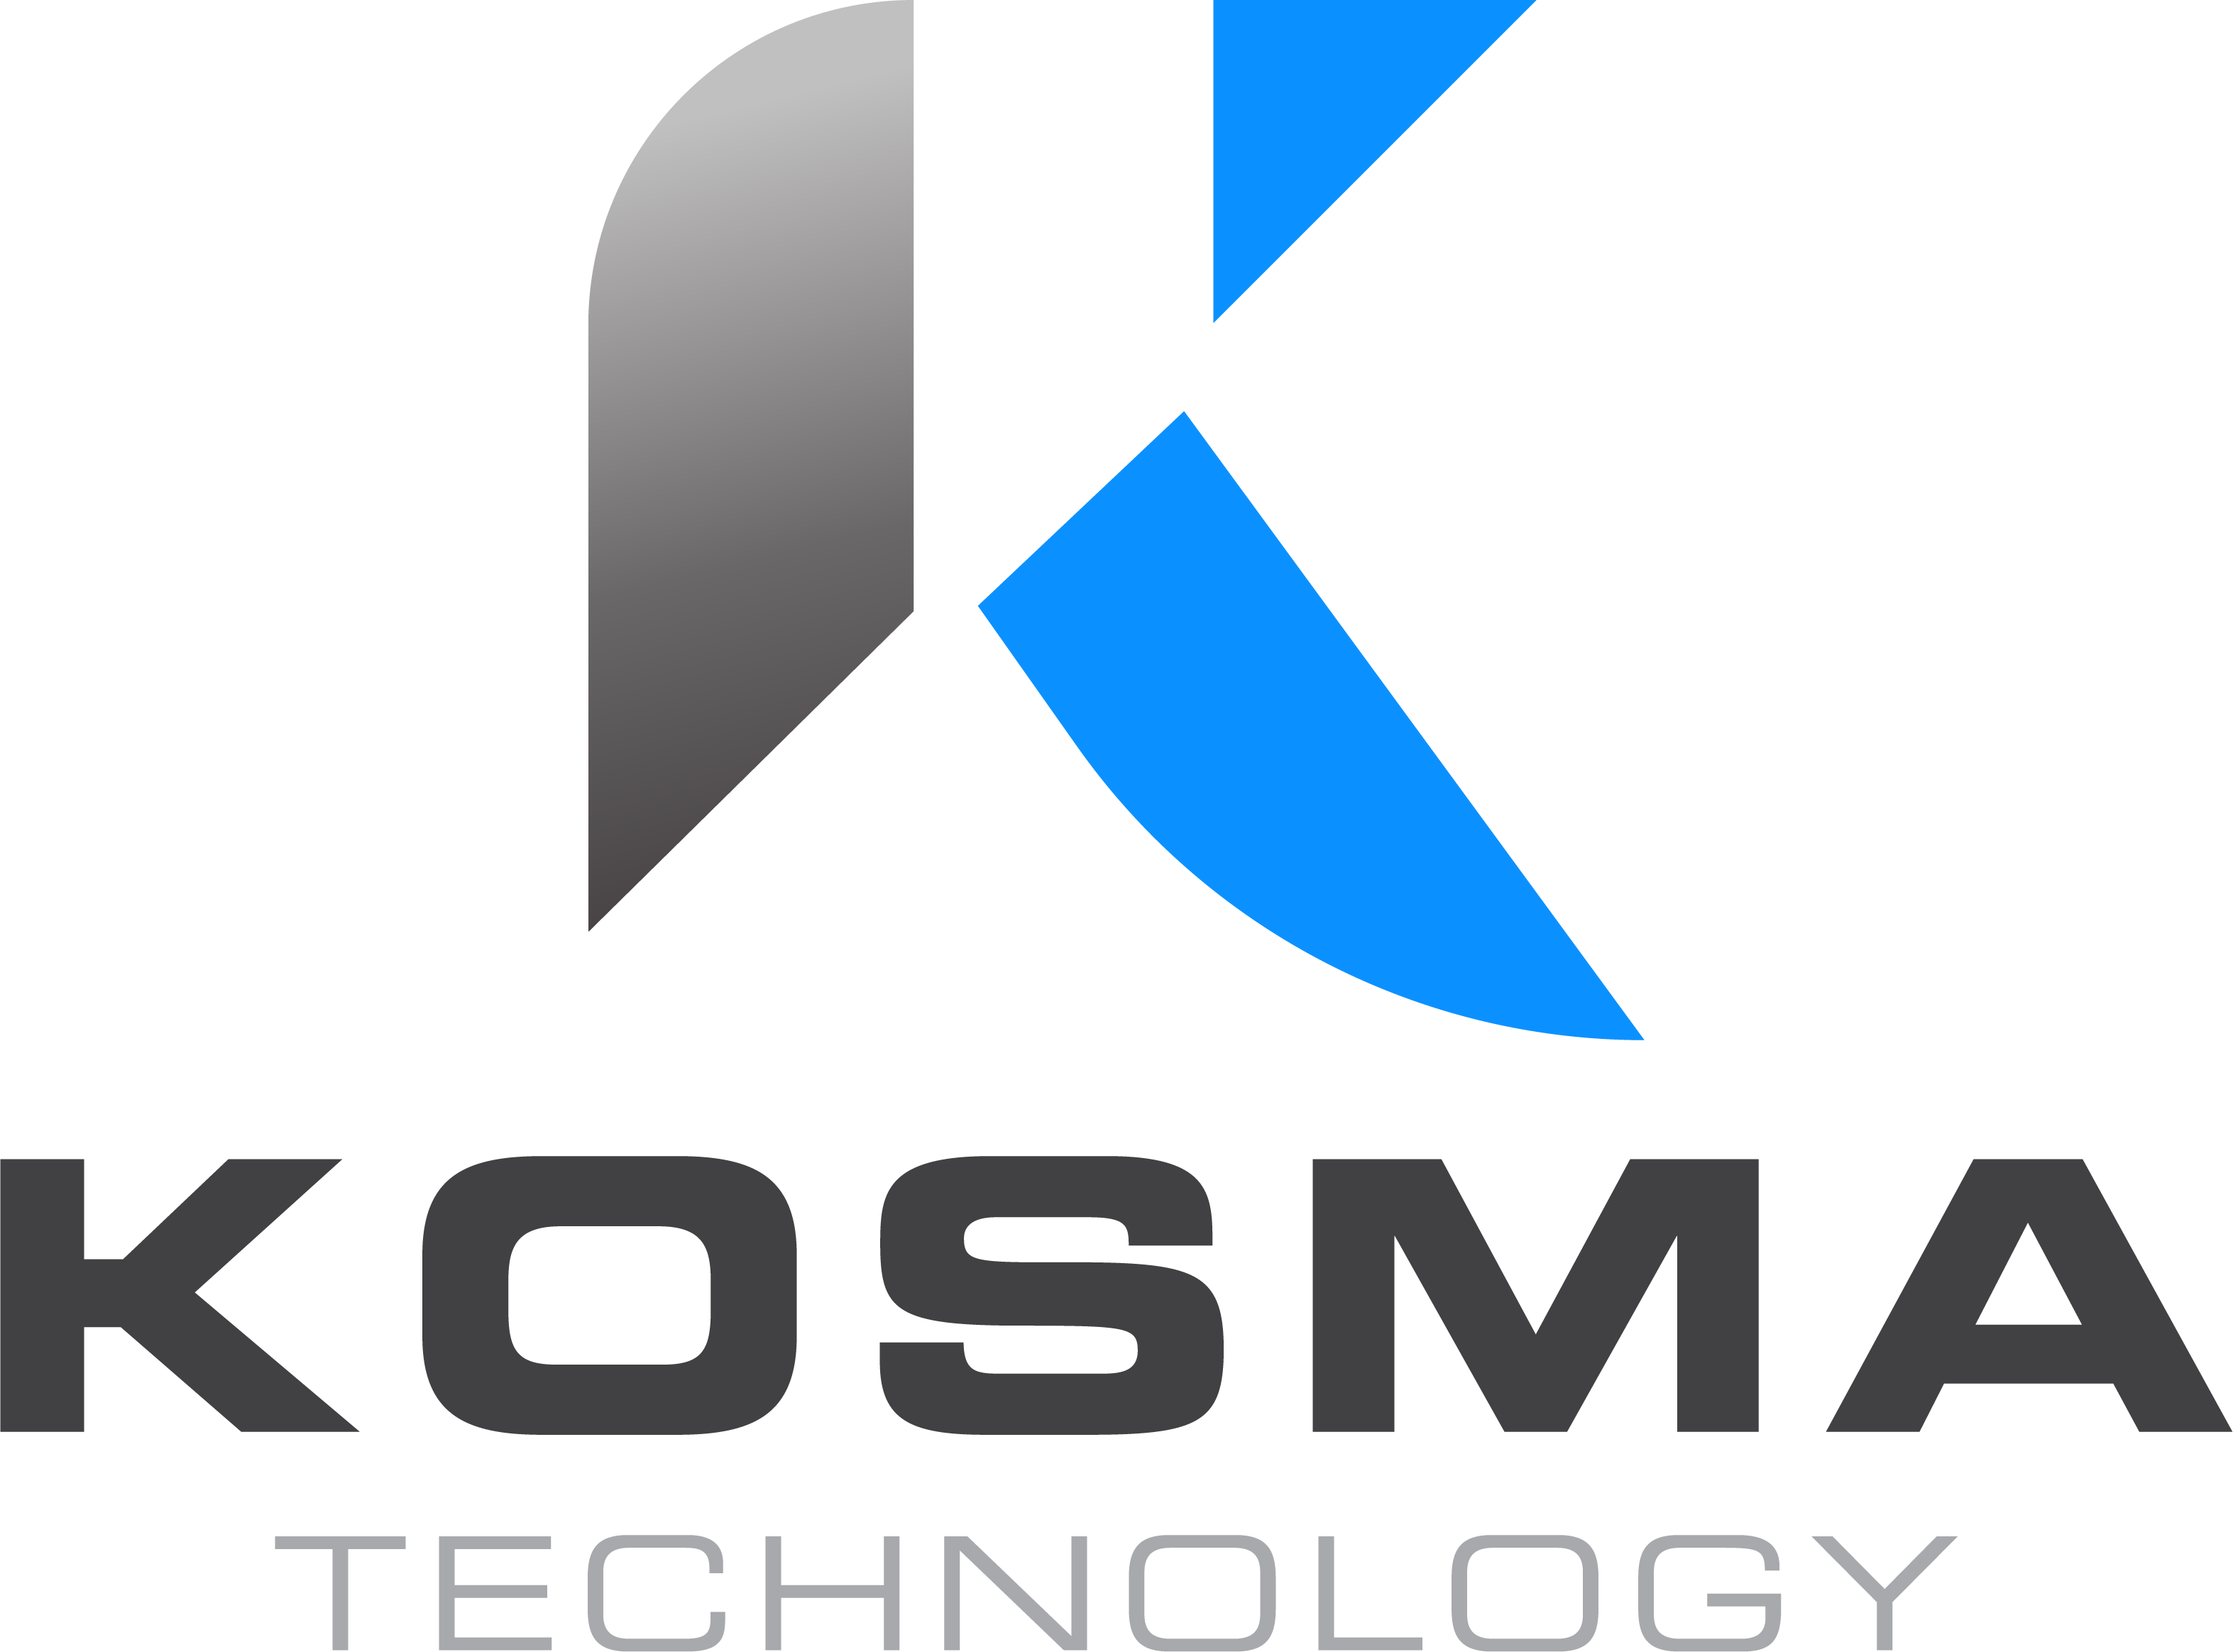 Kosma Technology